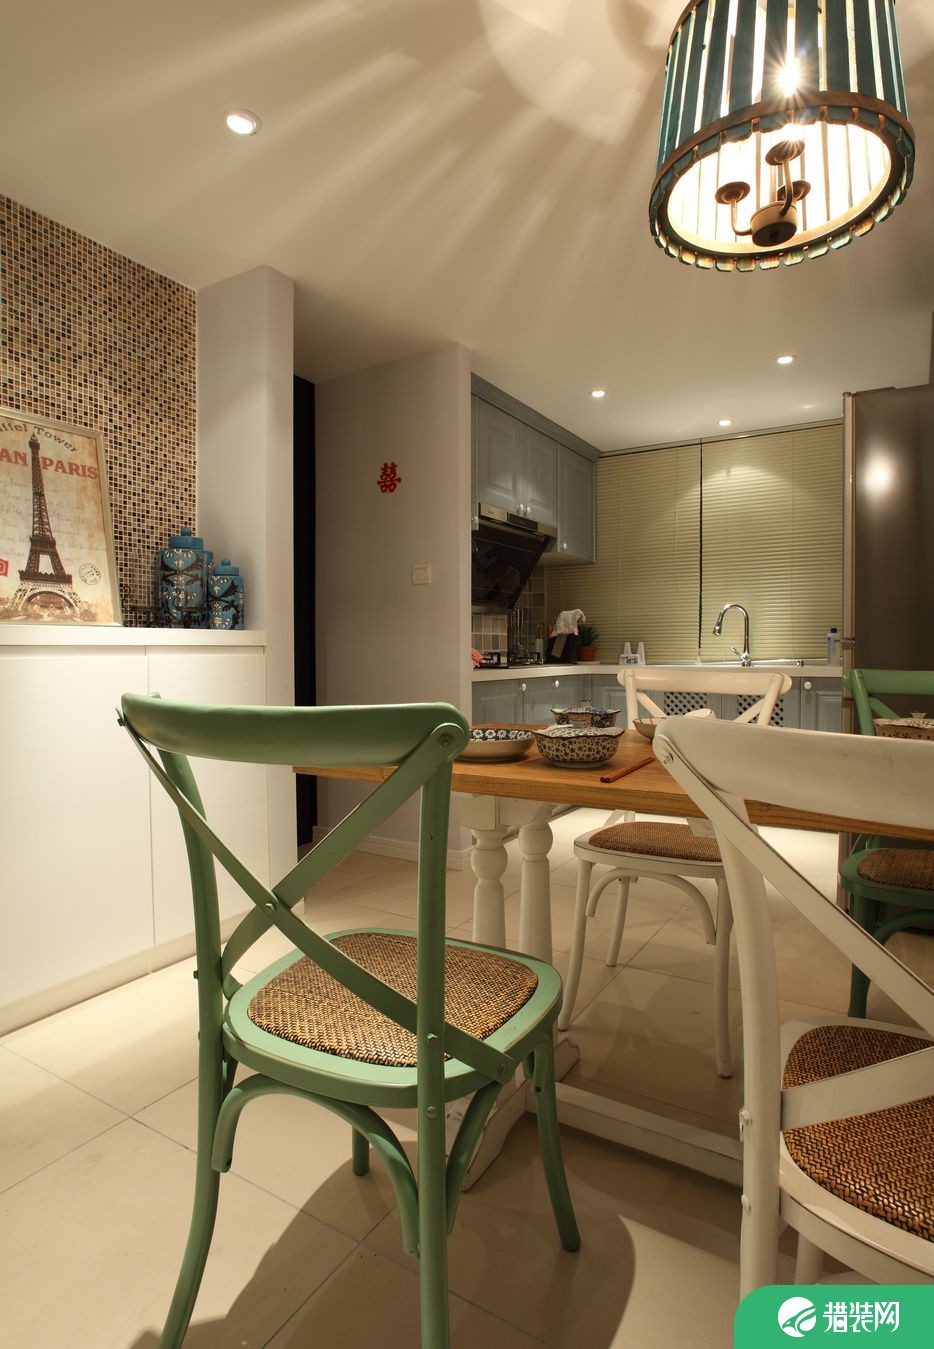 海棠家园现代简约两居室装修效果图